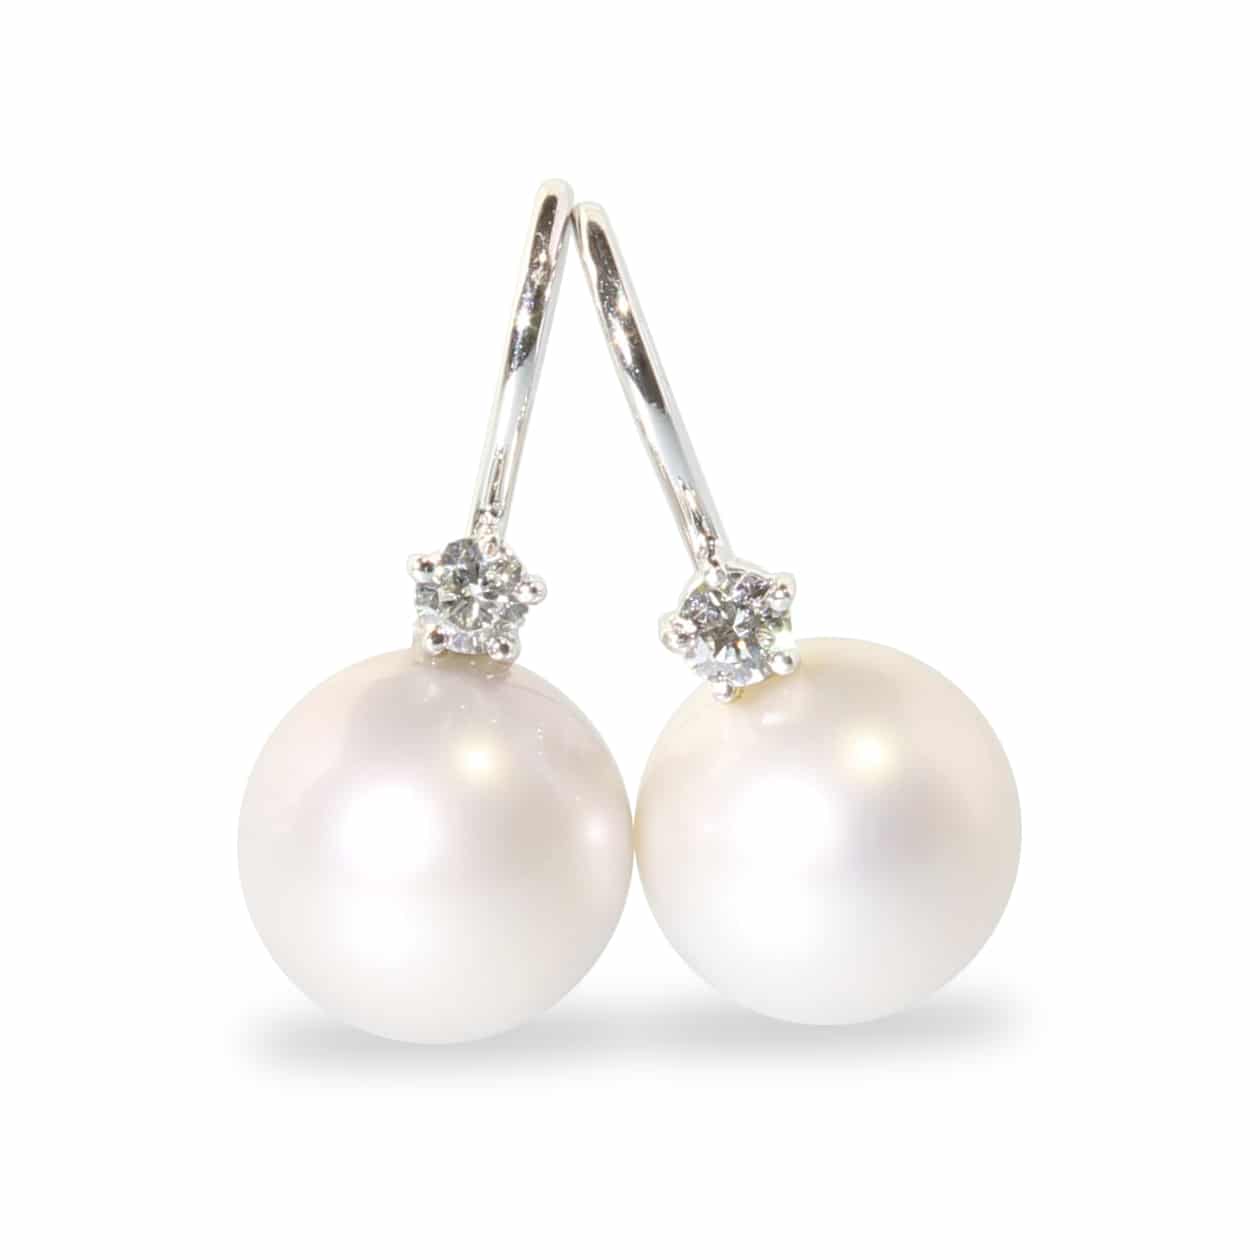 Pendientes de perlas y diamantes en oro blanco 18K, hechos a mano.  Pieza exclusiva.